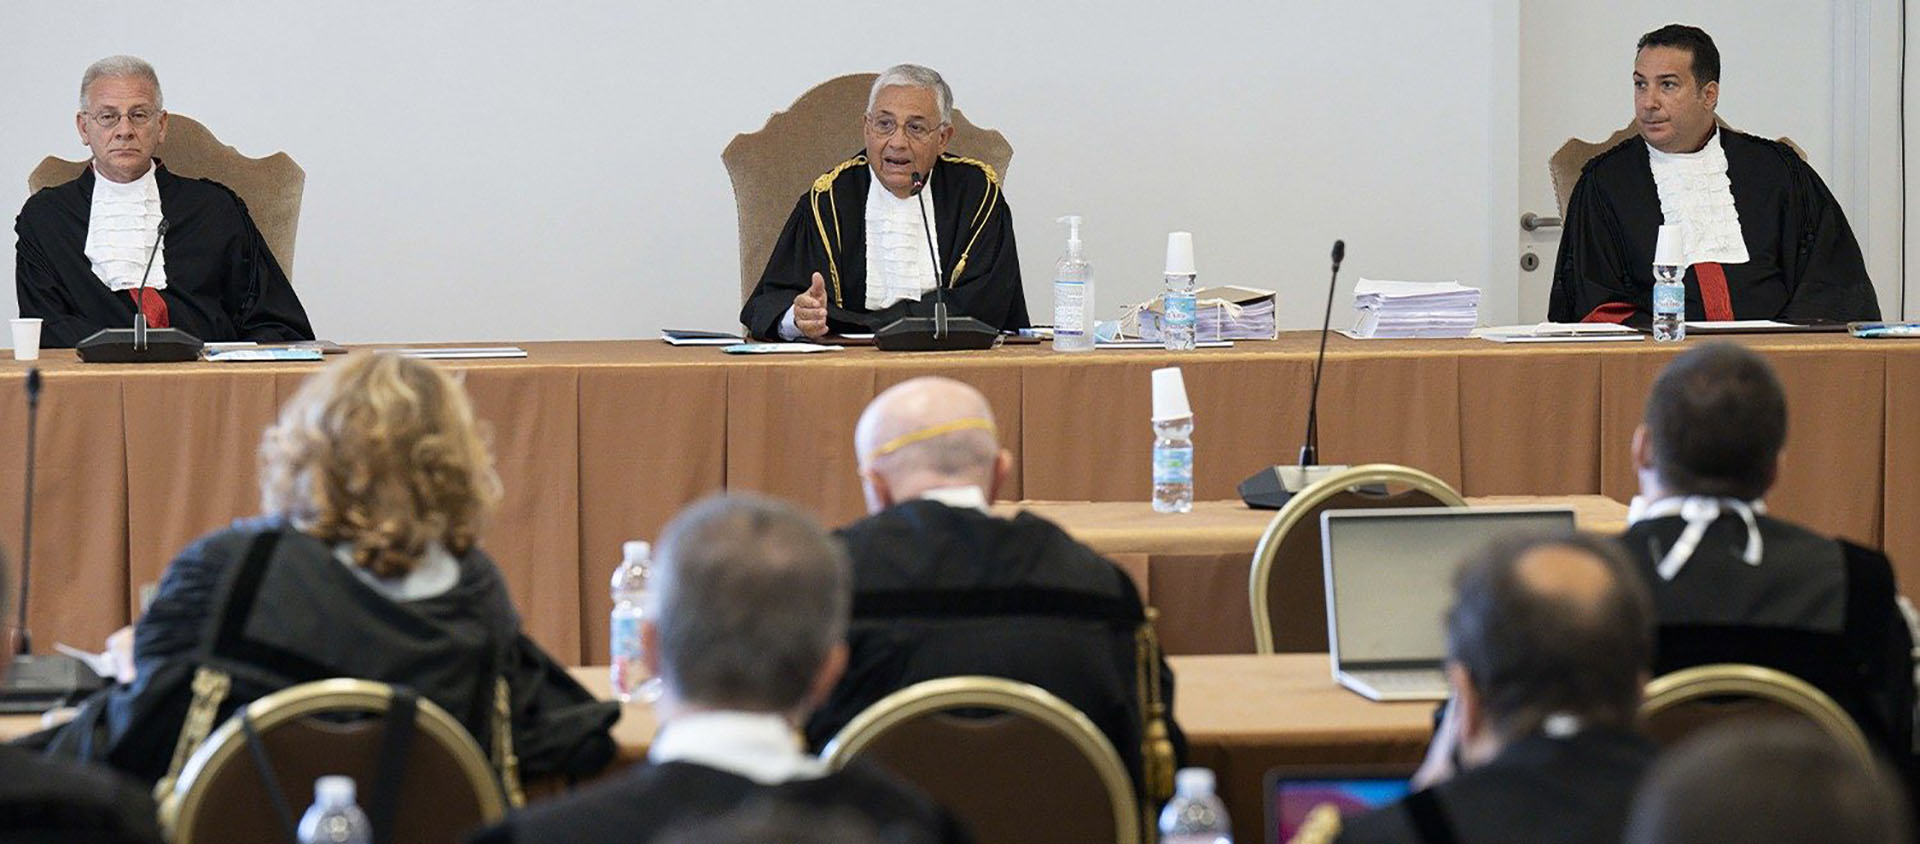 Seulement un des quatre témoins attendus s'est présenté au cours d'une audience très courte | © Vatican Media